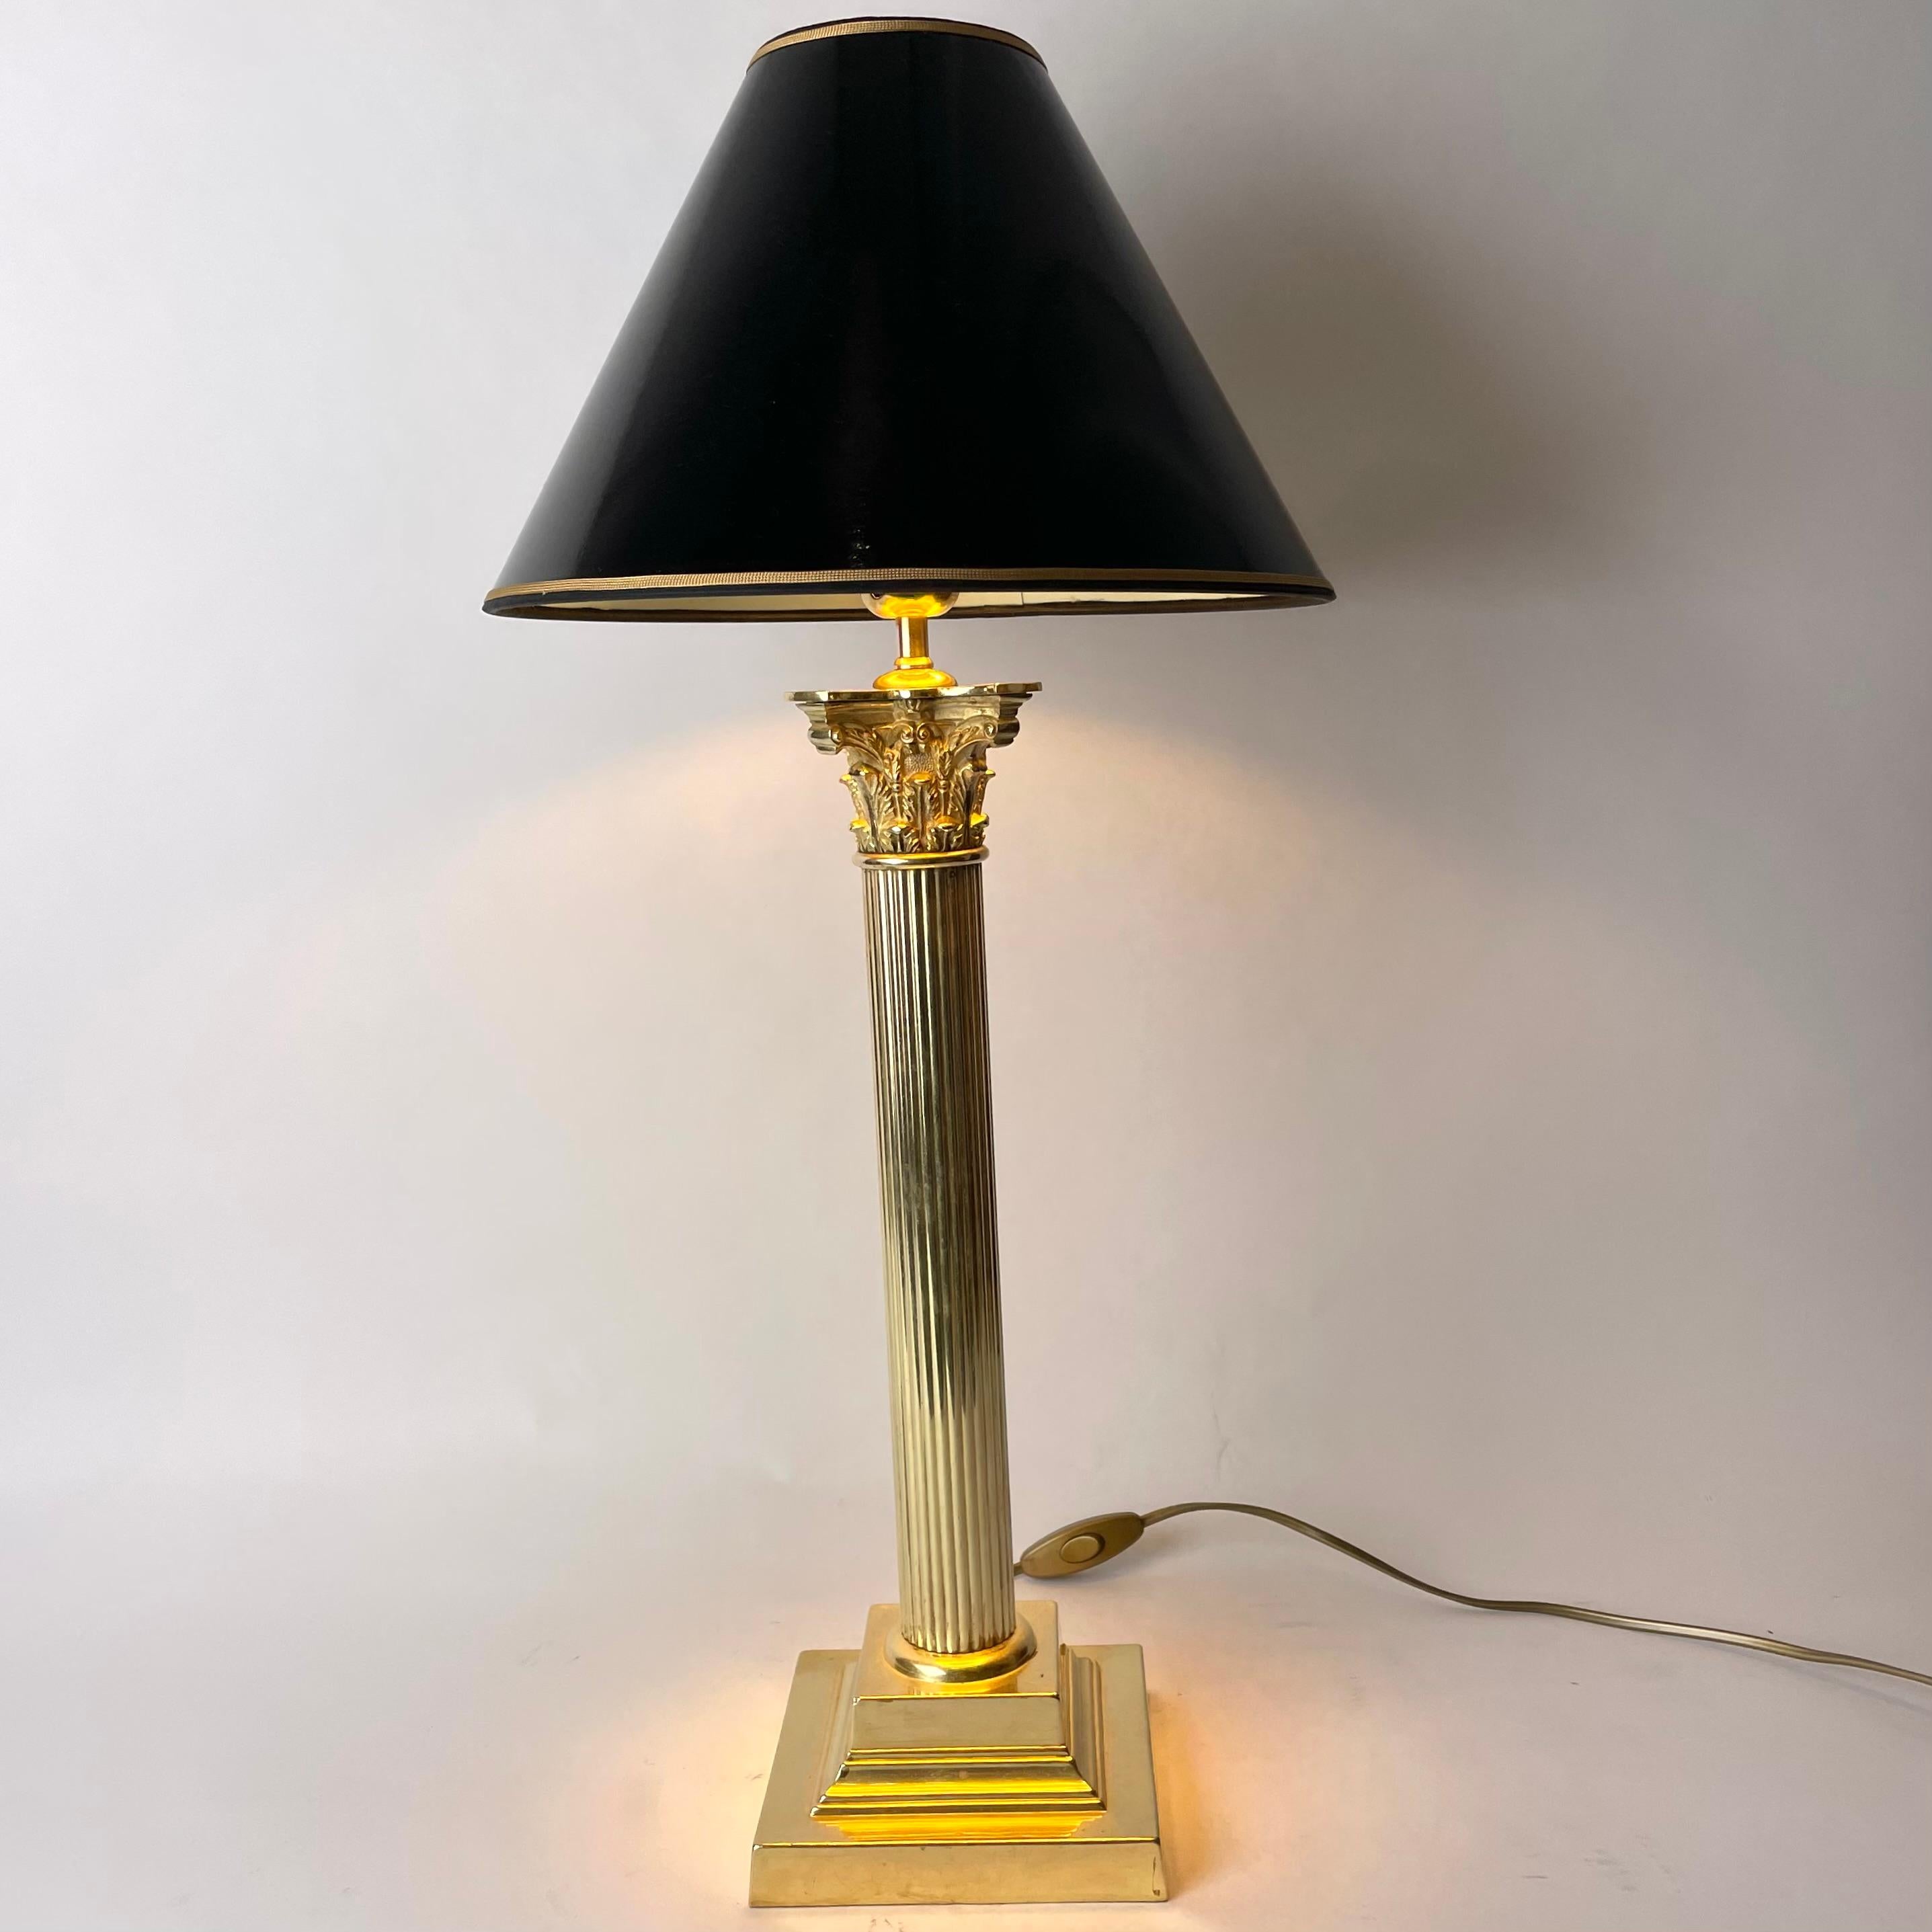 Raffinierte Tischlampe aus Messing mit klassischer Säule aus dem späten 19. Jahrhundert. Ursprünglich eine Petroleumlampe, die Anfang des 20. Jahrhunderts in eine Tischlampe umgewandelt wurde.

Neu verkabelte Elektrizität 

Der Lampenschirm in